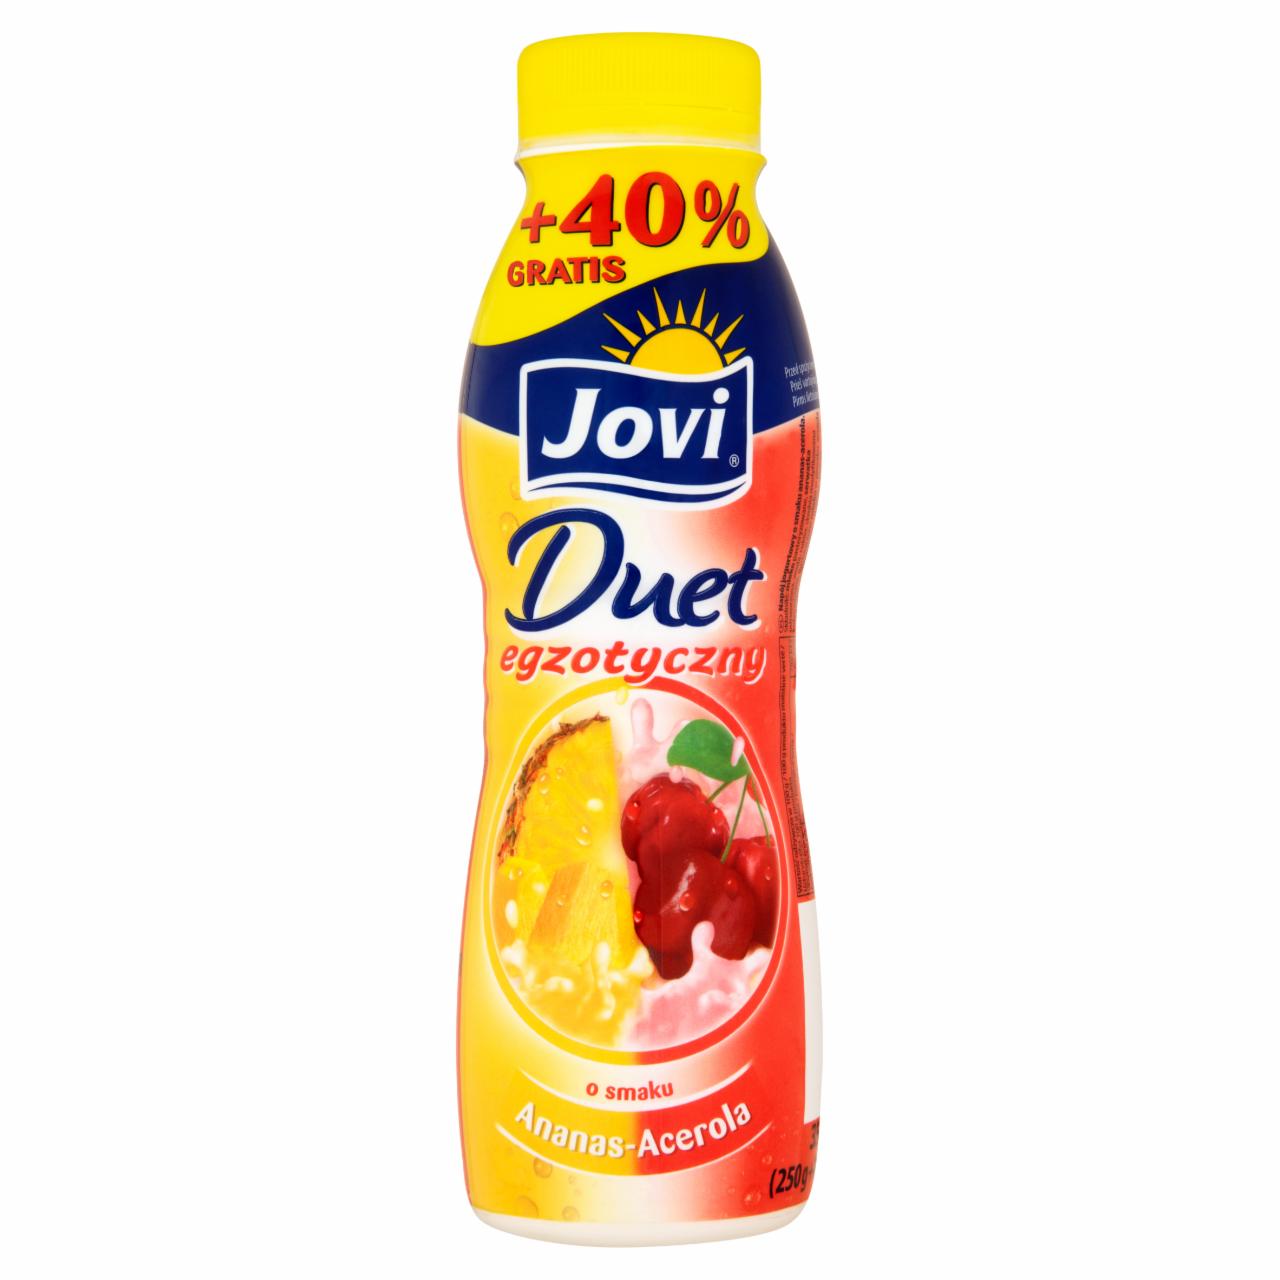 Zdjęcia - Jovi Duet egzotyczny Napój jogurtowy o smaku ananas-acerola 350 g